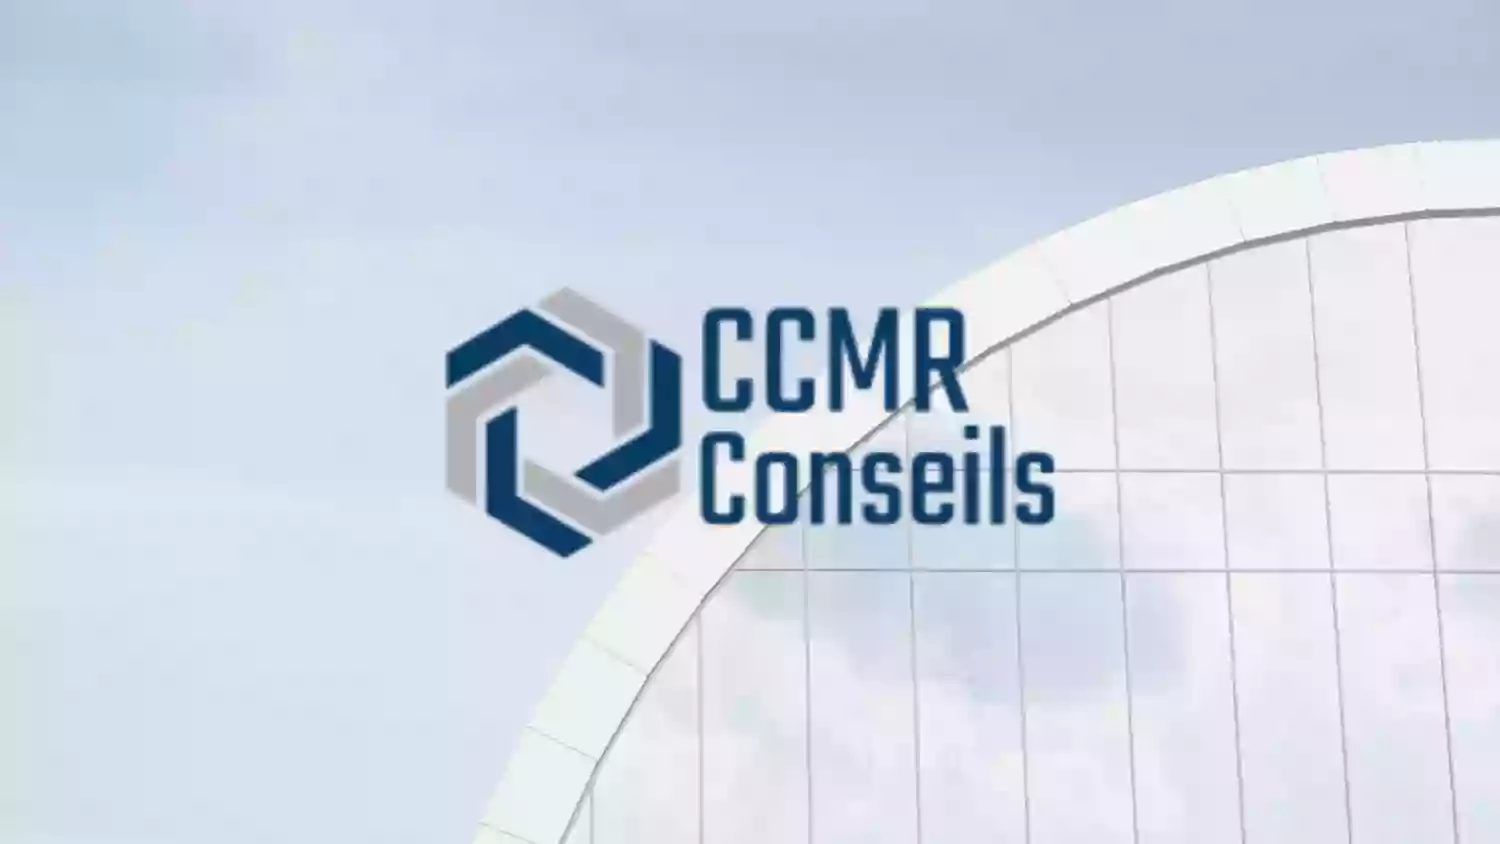 CCMR Conseils